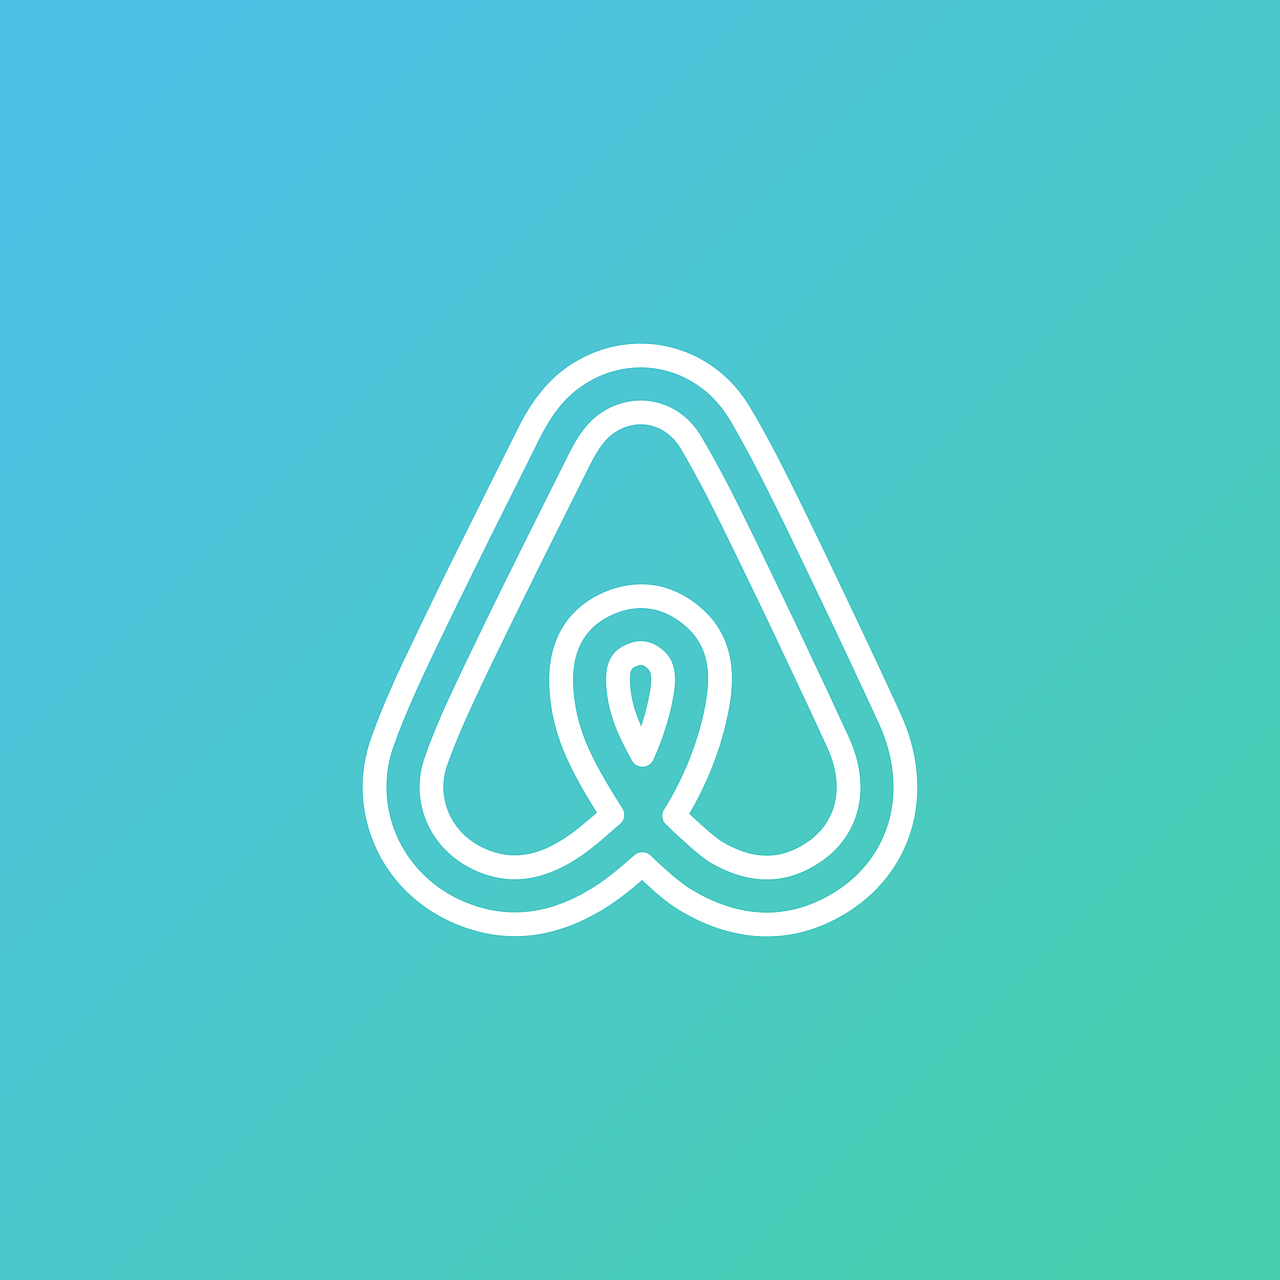 Airbnb,  Airbnb Piktogramą,  Airbnb Logotipas,  Airbnb Simbolis,  Socialiniai Tinklai,  Tinklai,  Internetas,  Tinklas,  Socialinė,  Socialinis Tinklas